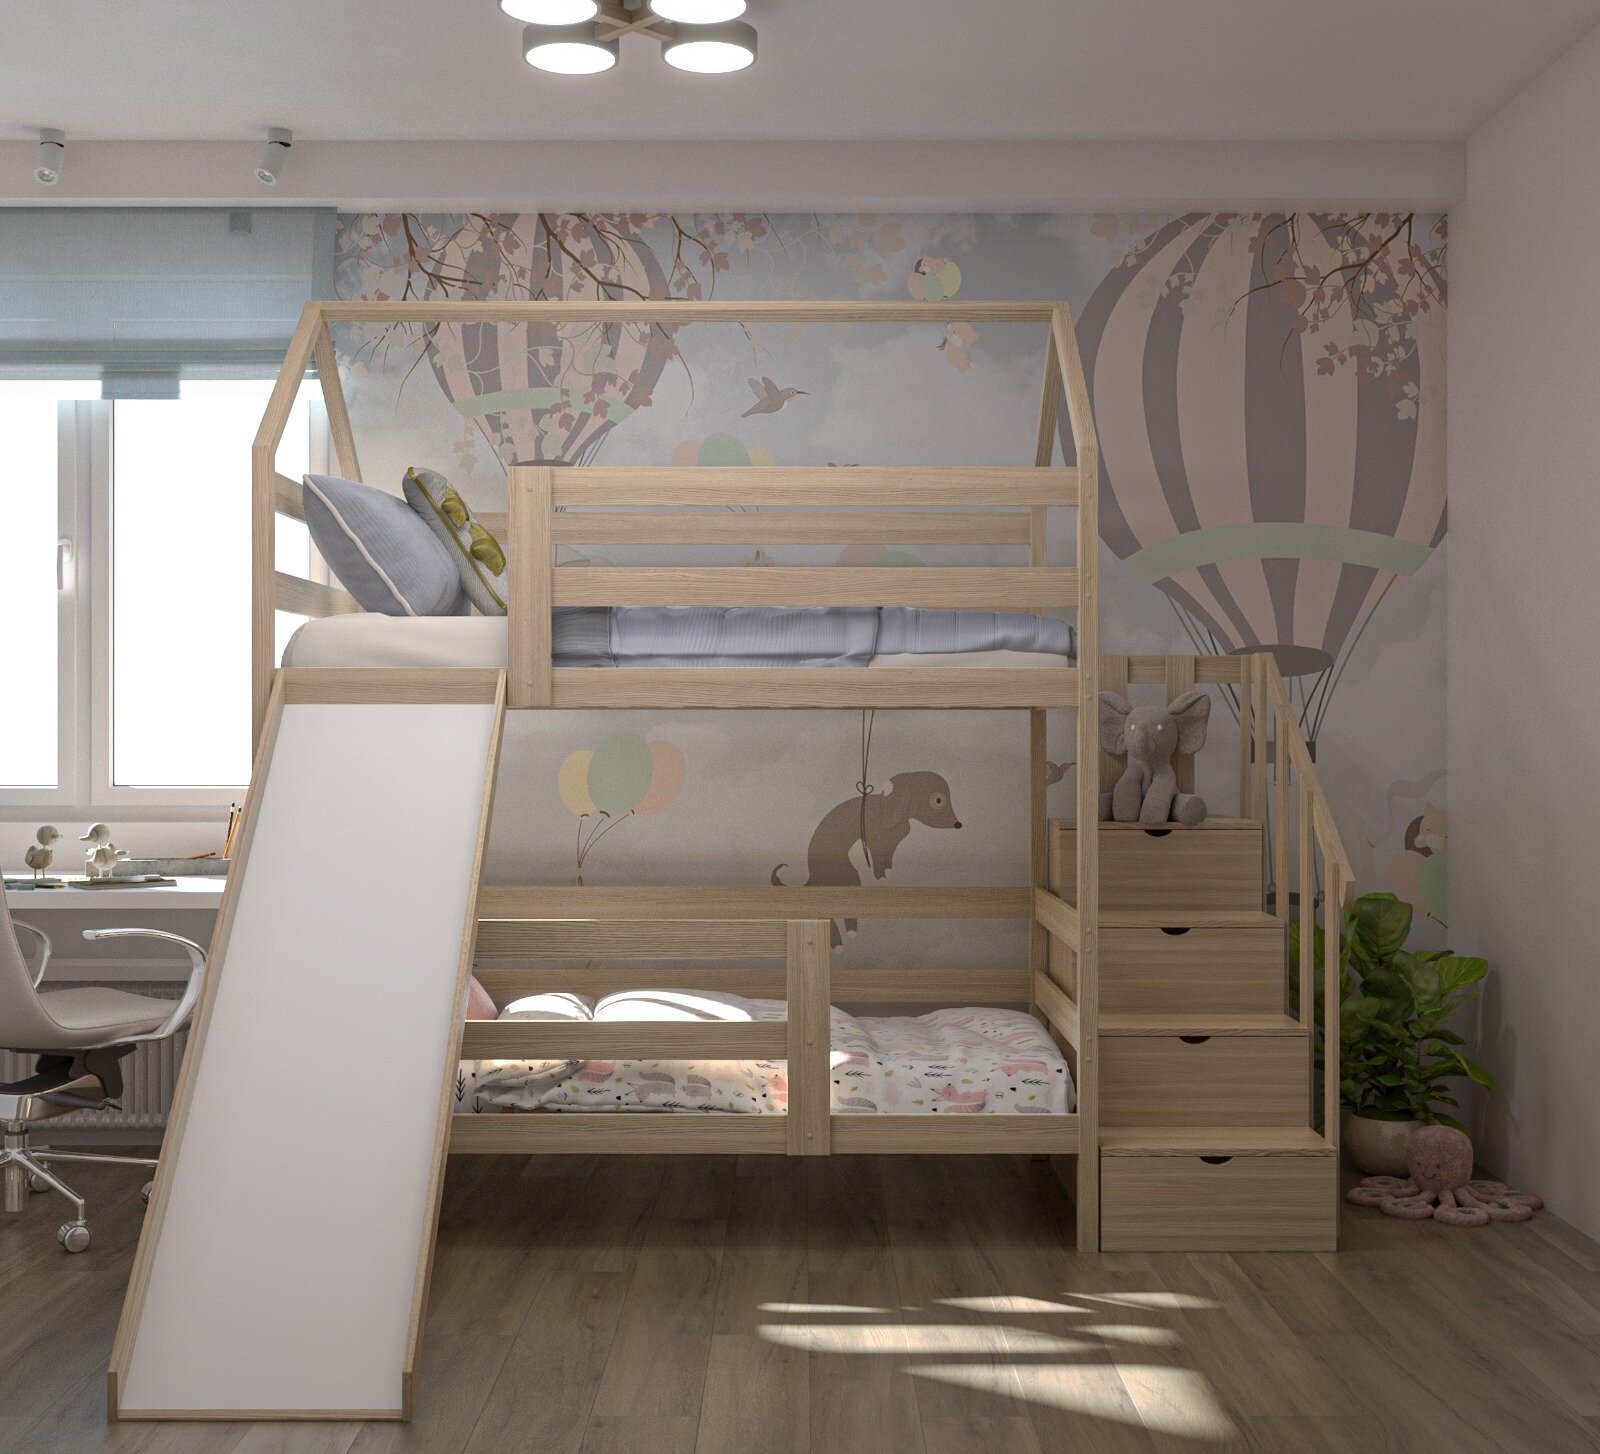 Кровать детская, подростковая "Двухъярусная с лестницей-комодом и горкой", спальное место 160х80, натуральный цвет, из массива